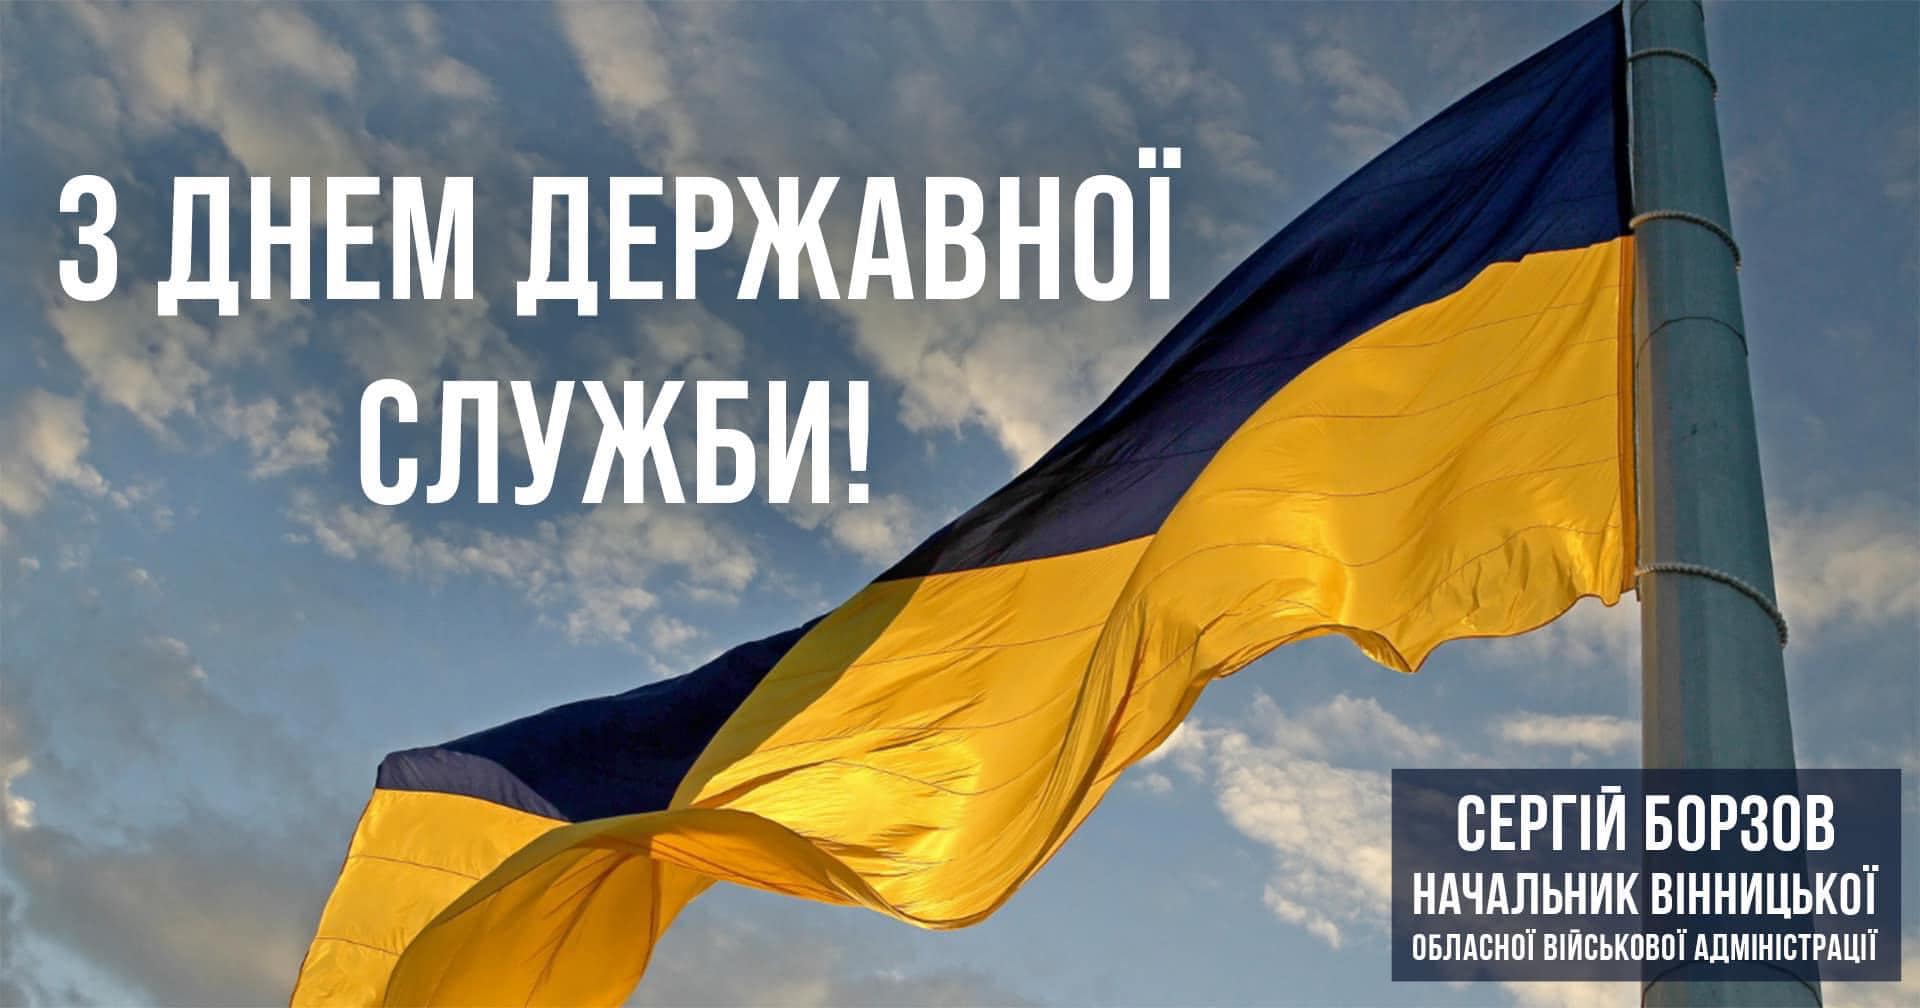 Прапор України і надпис "З Днем державної служби!"